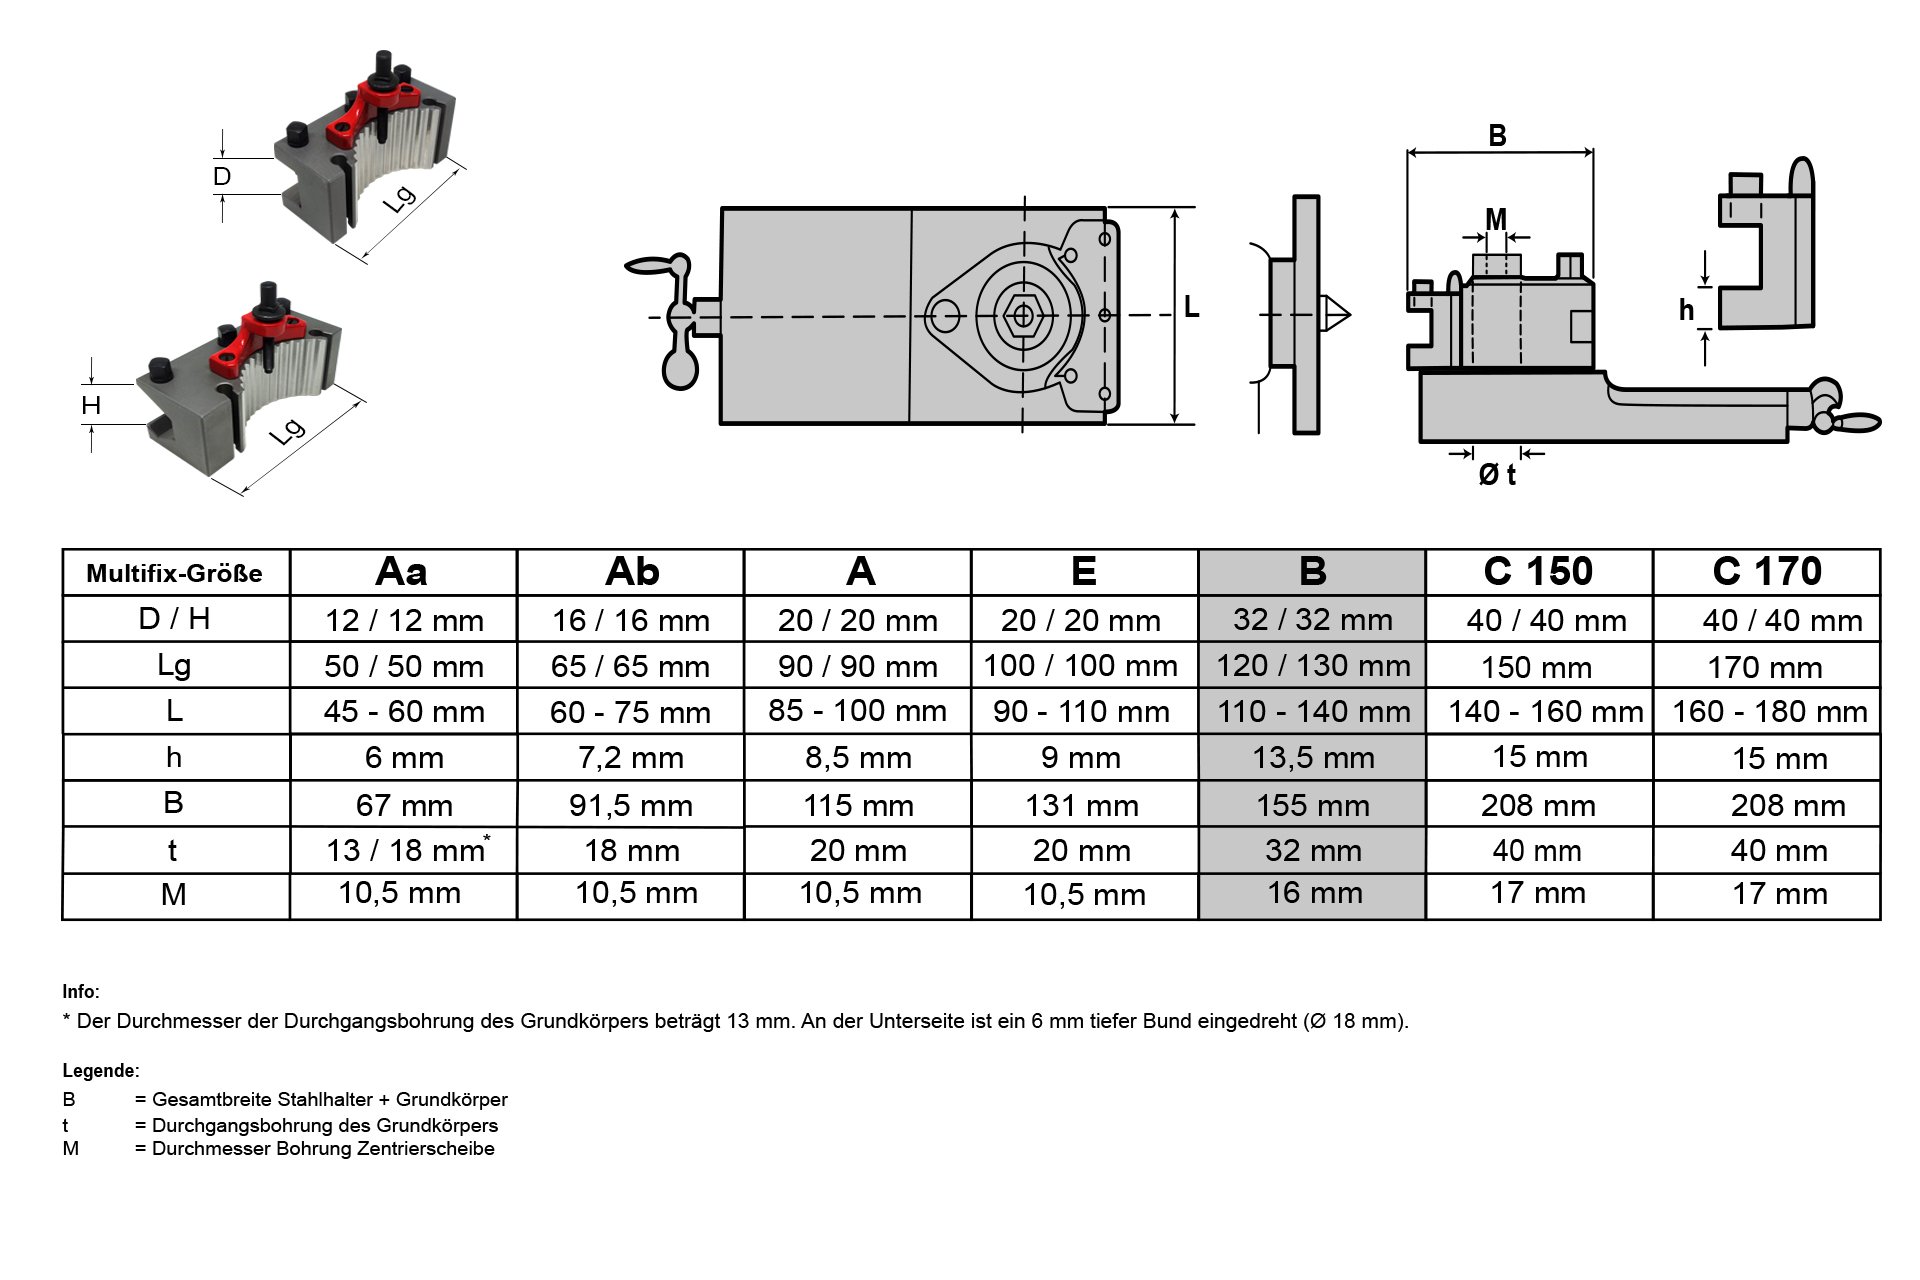 Schnellwechsel-Stahlhalter-Set, System "Multifix", Größe B